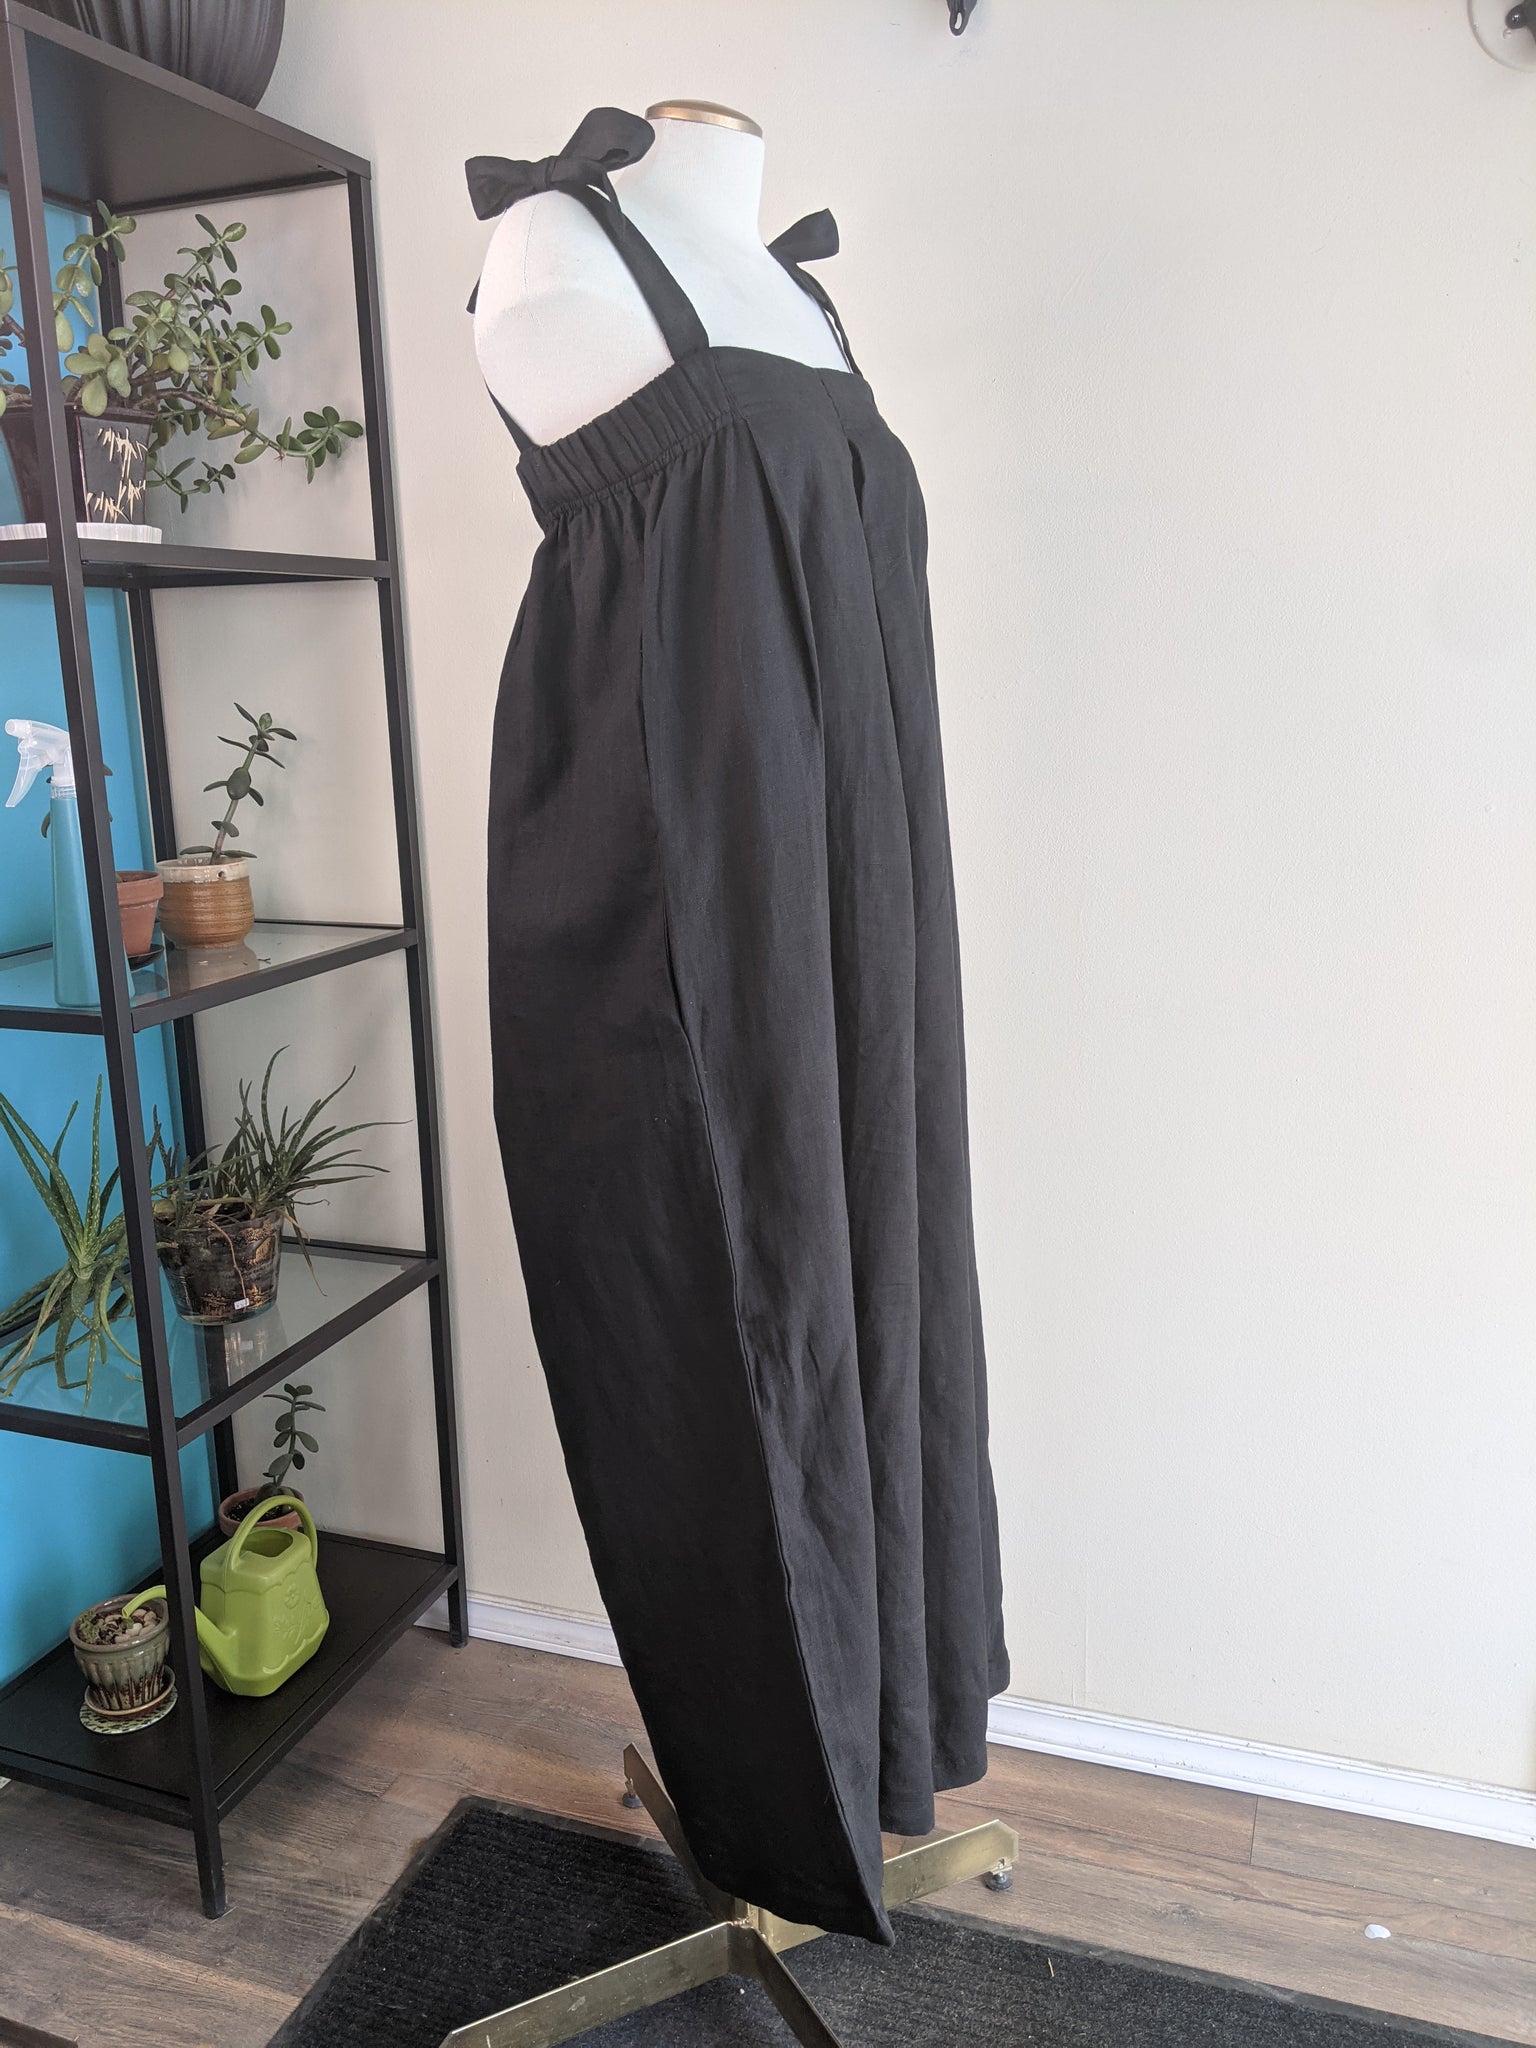 Black Linen Jumpsuit